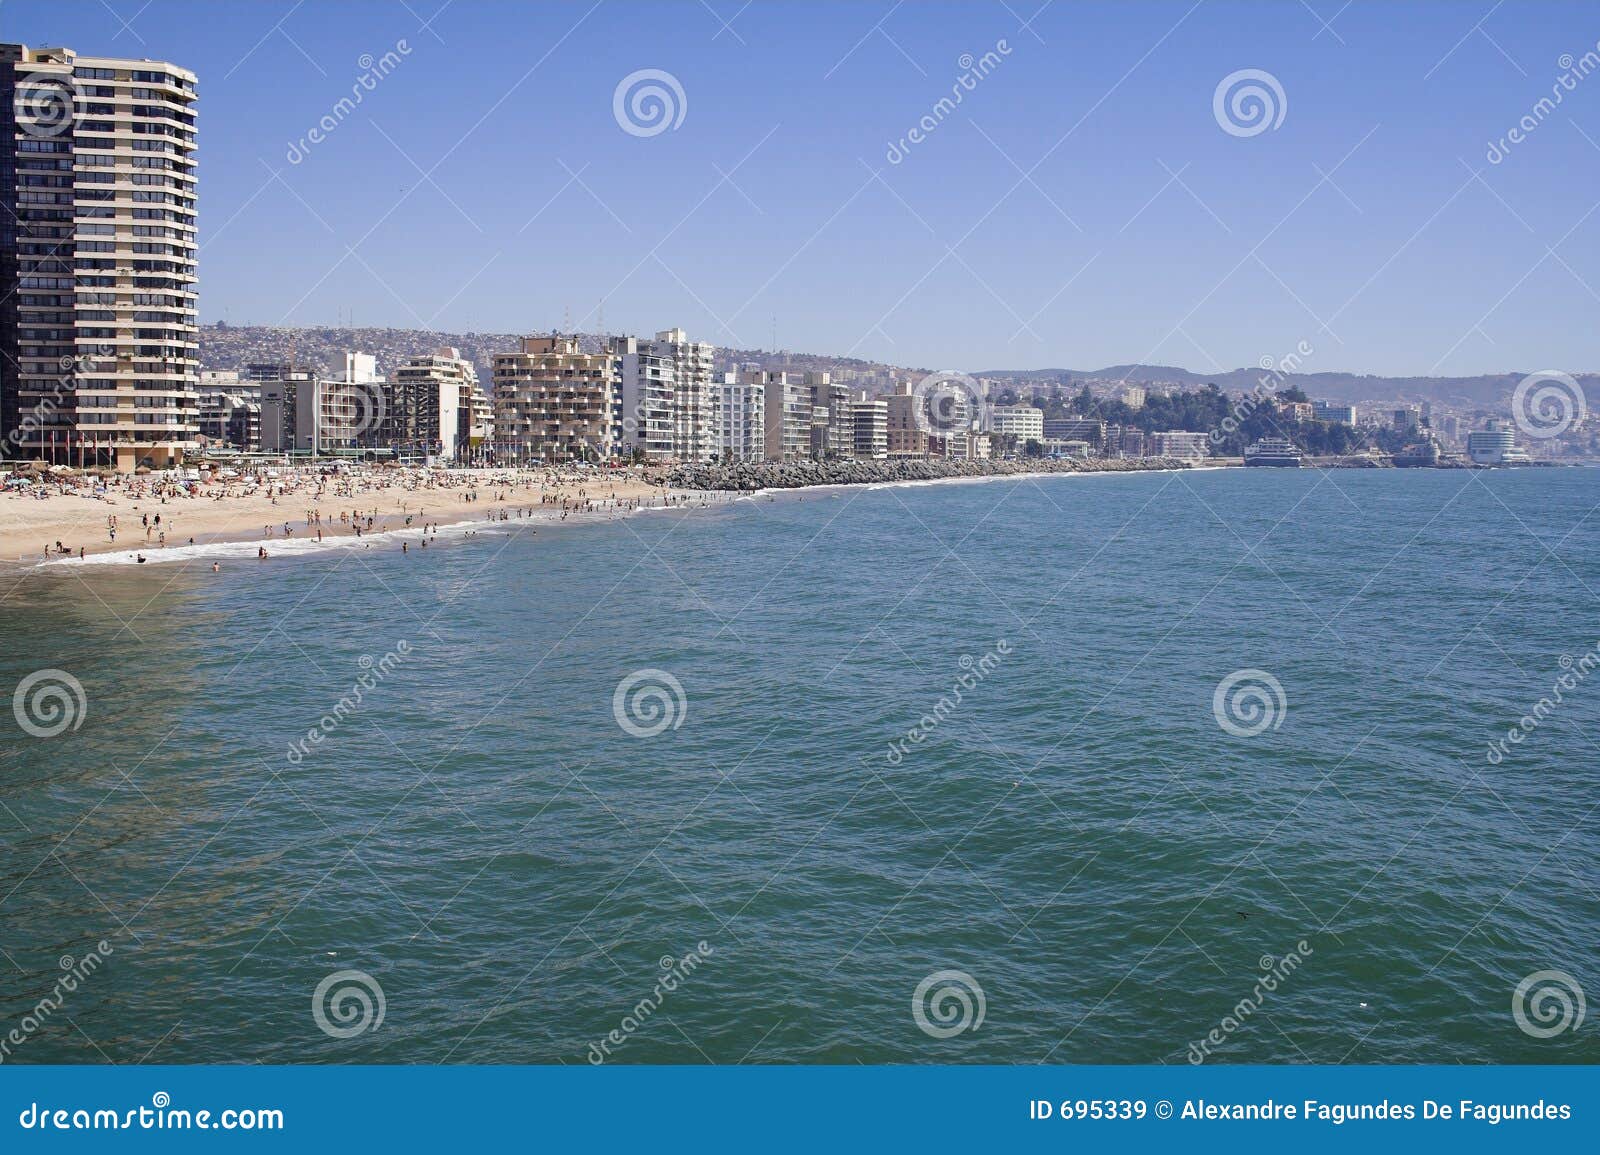 the beach, vina del mar